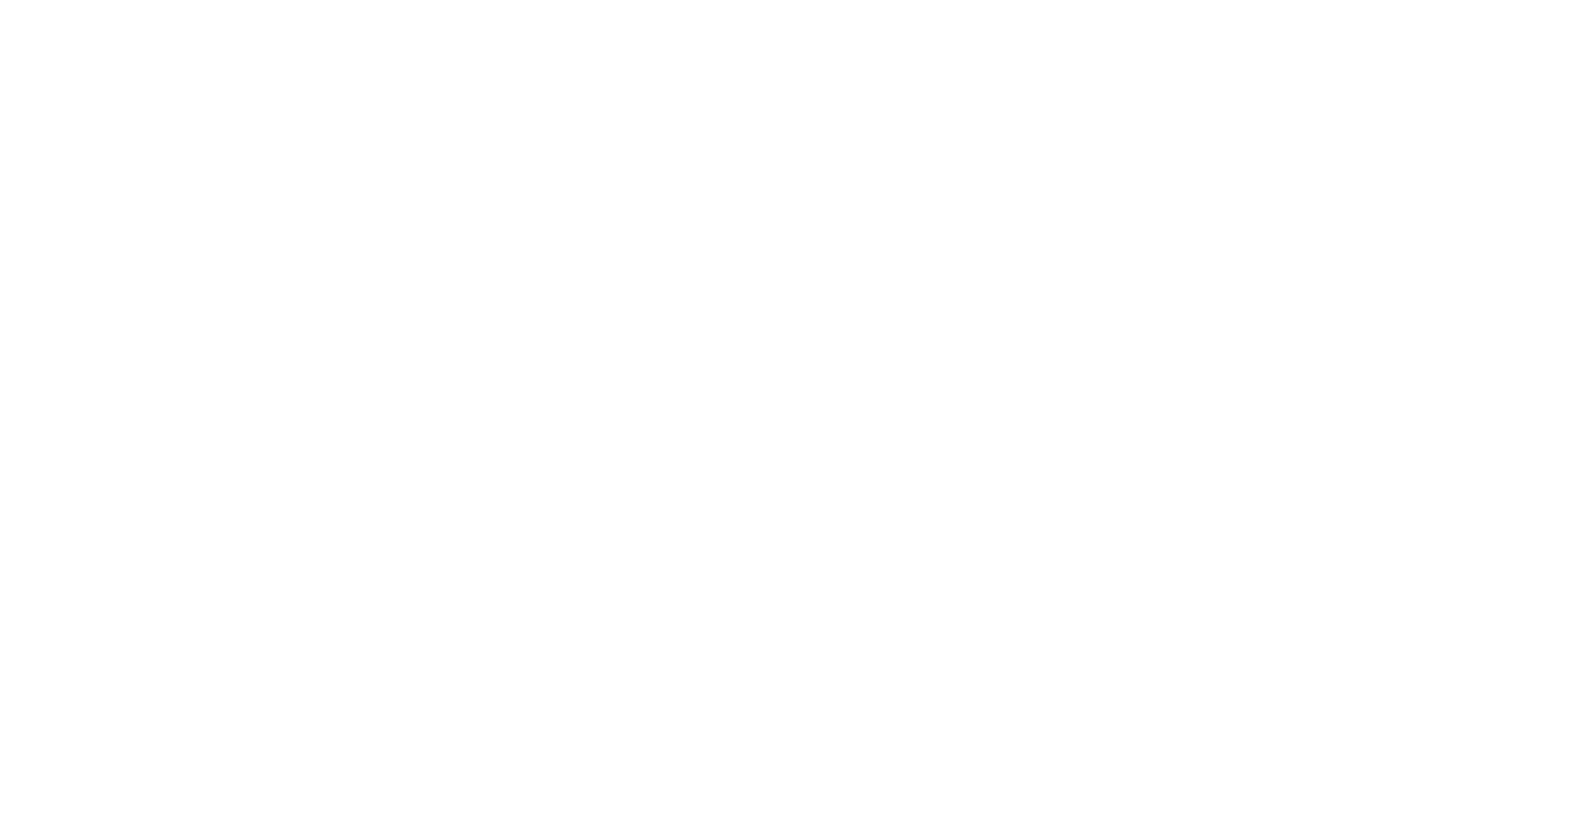 Terry Paule